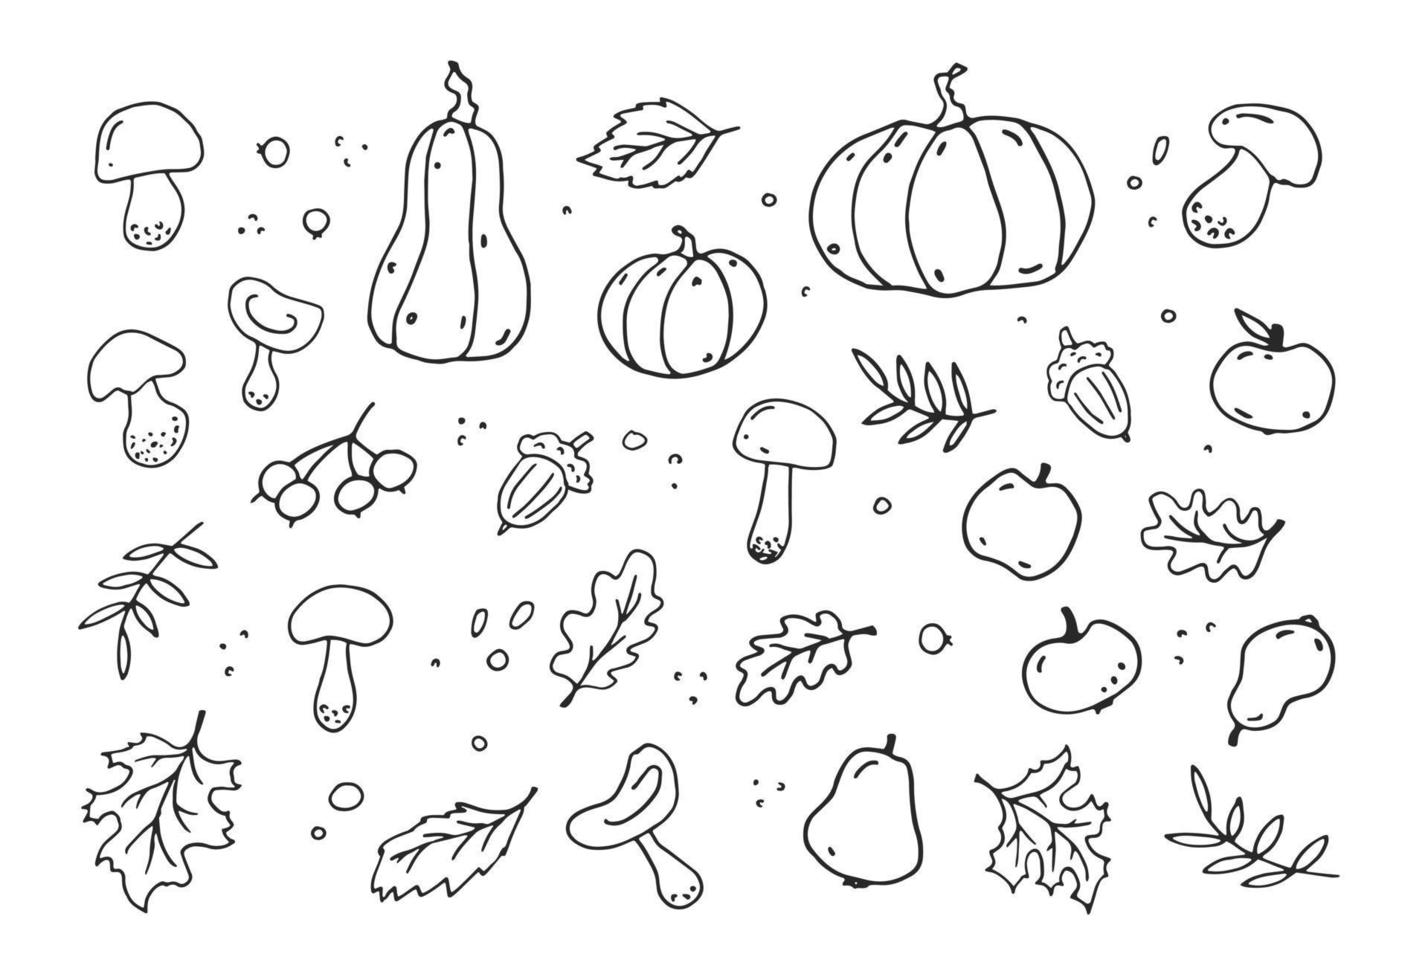 ensemble drôle d'automne dessiné à la main. éléments vectoriels de style doodle noir et blanc avec feuilles d'érable et de chêne, glands, citrouille, pommes, champignons. l'illustration est isolée sur un fond blanc. vecteur